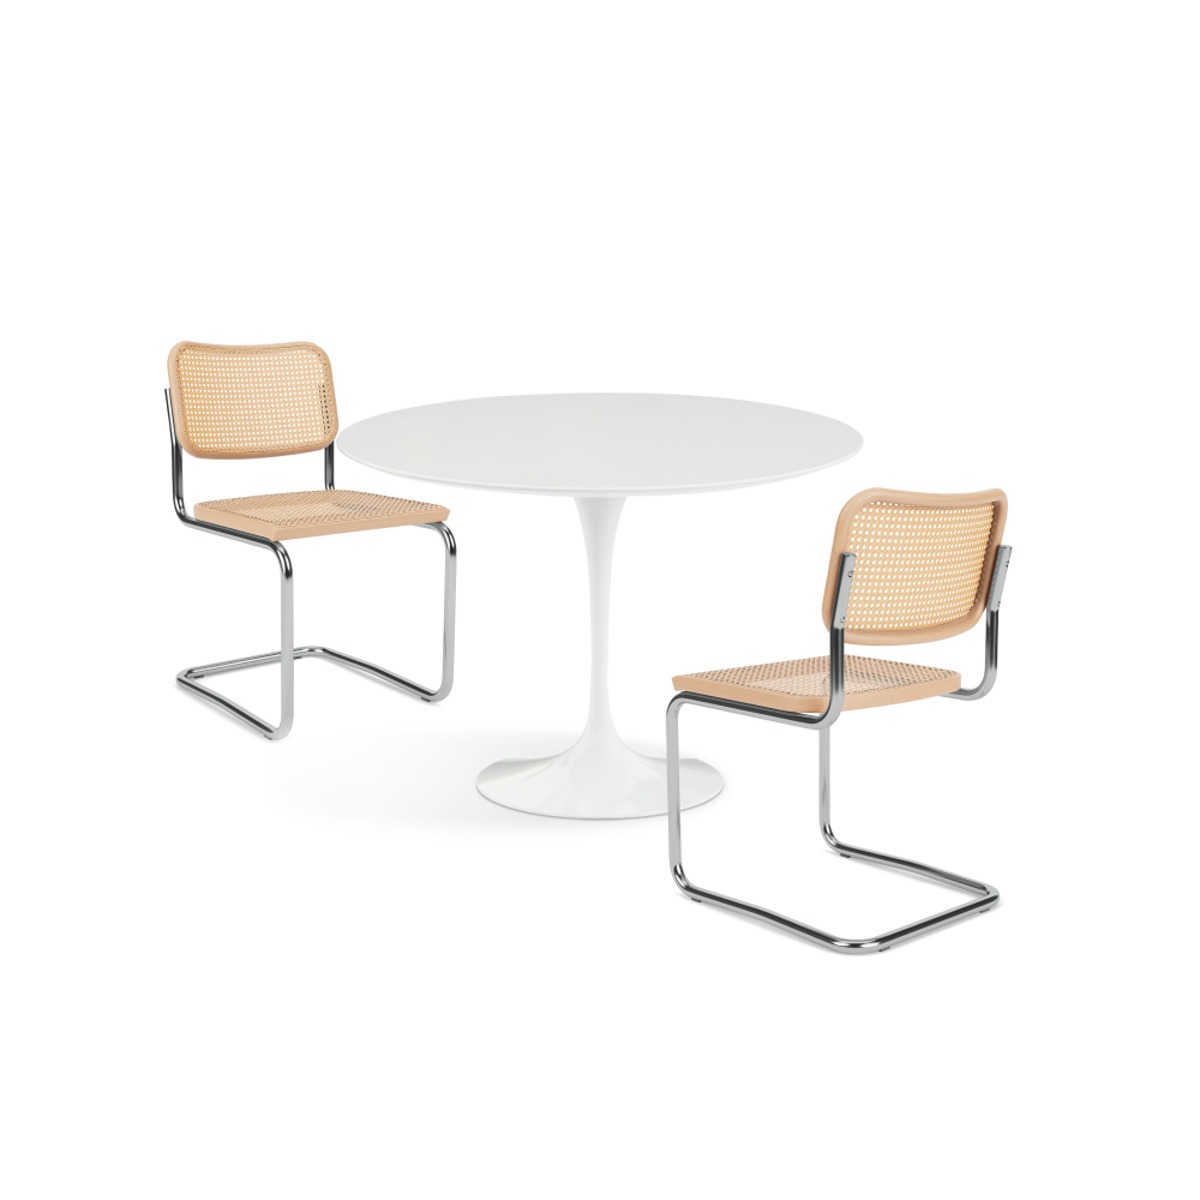 KNOLL [PROMOTION 20%] Saarinen Dining Table(ø107) + Cesca Chair